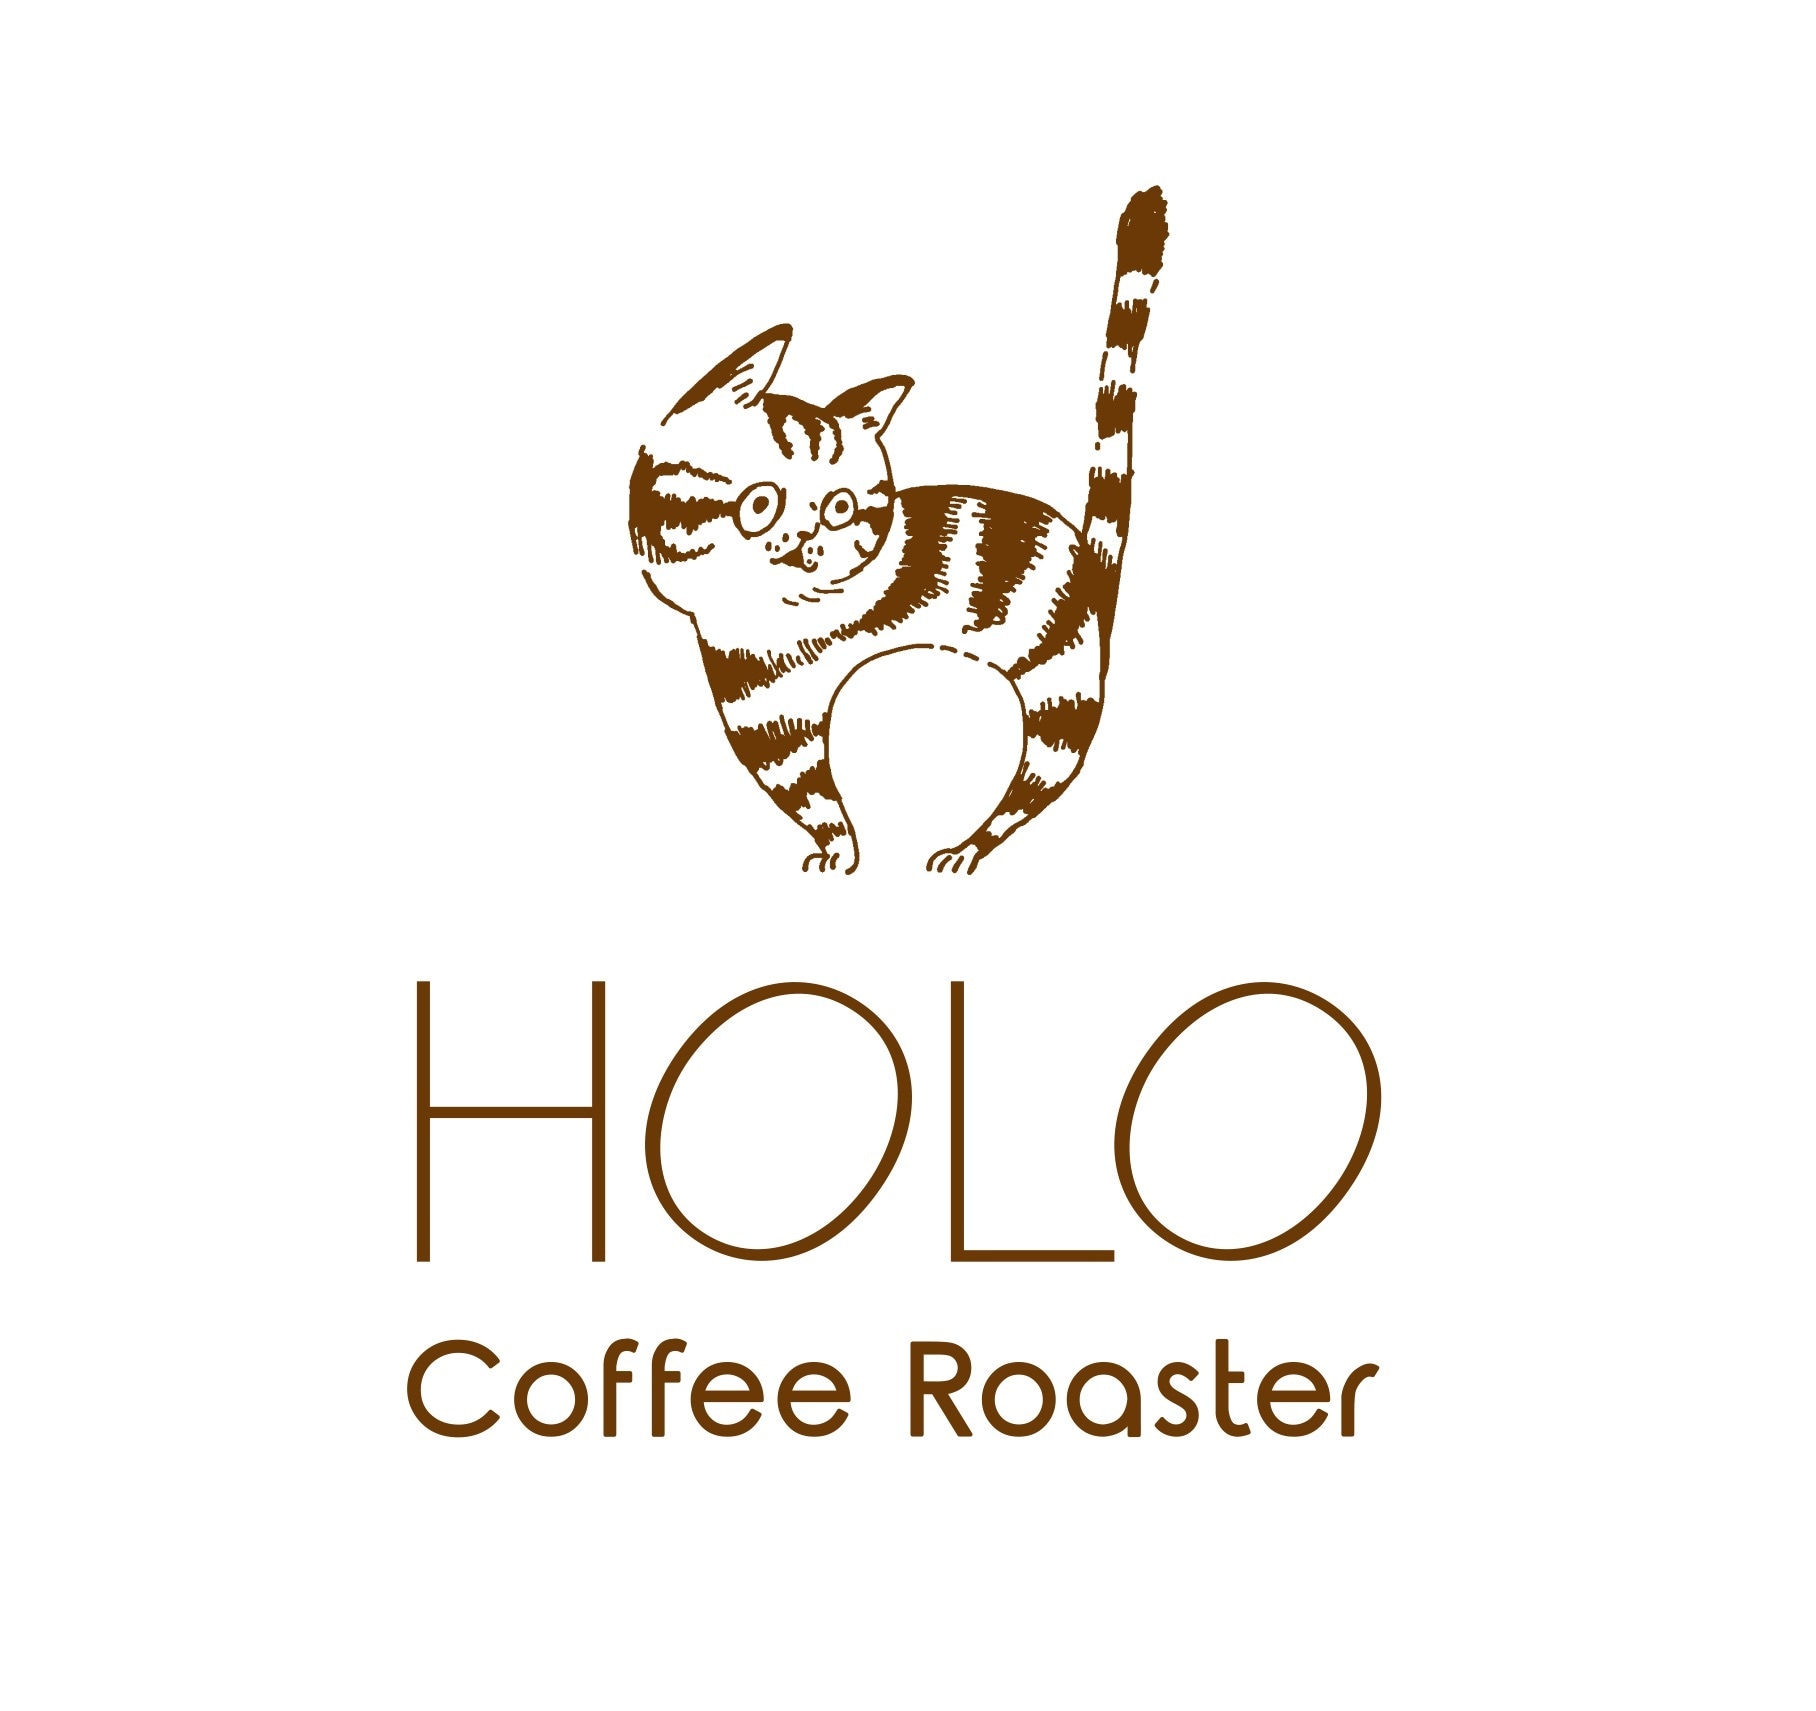 HOLO Coffee Roaster